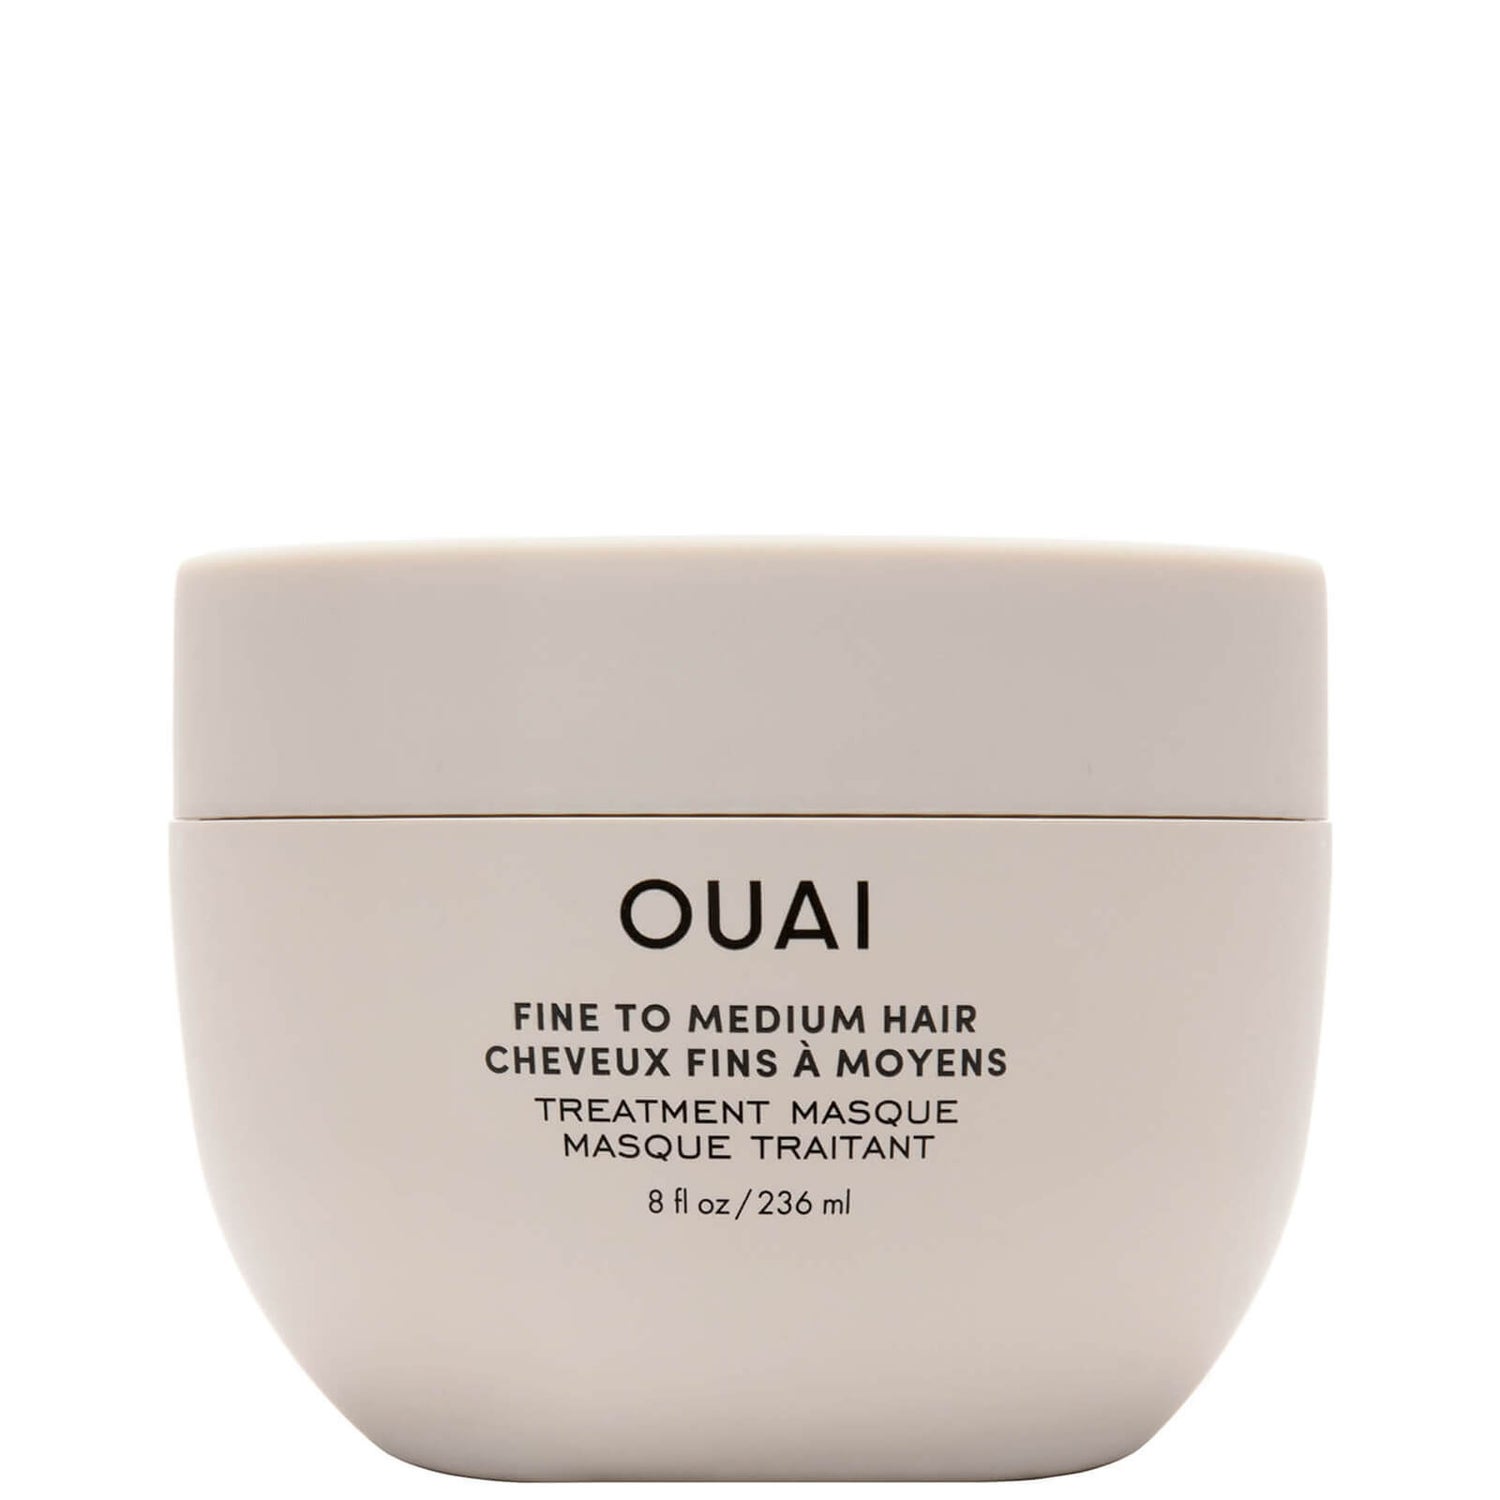 OUAI Fine-Medium Hair Treatment Masque maska do włosów 236 ml